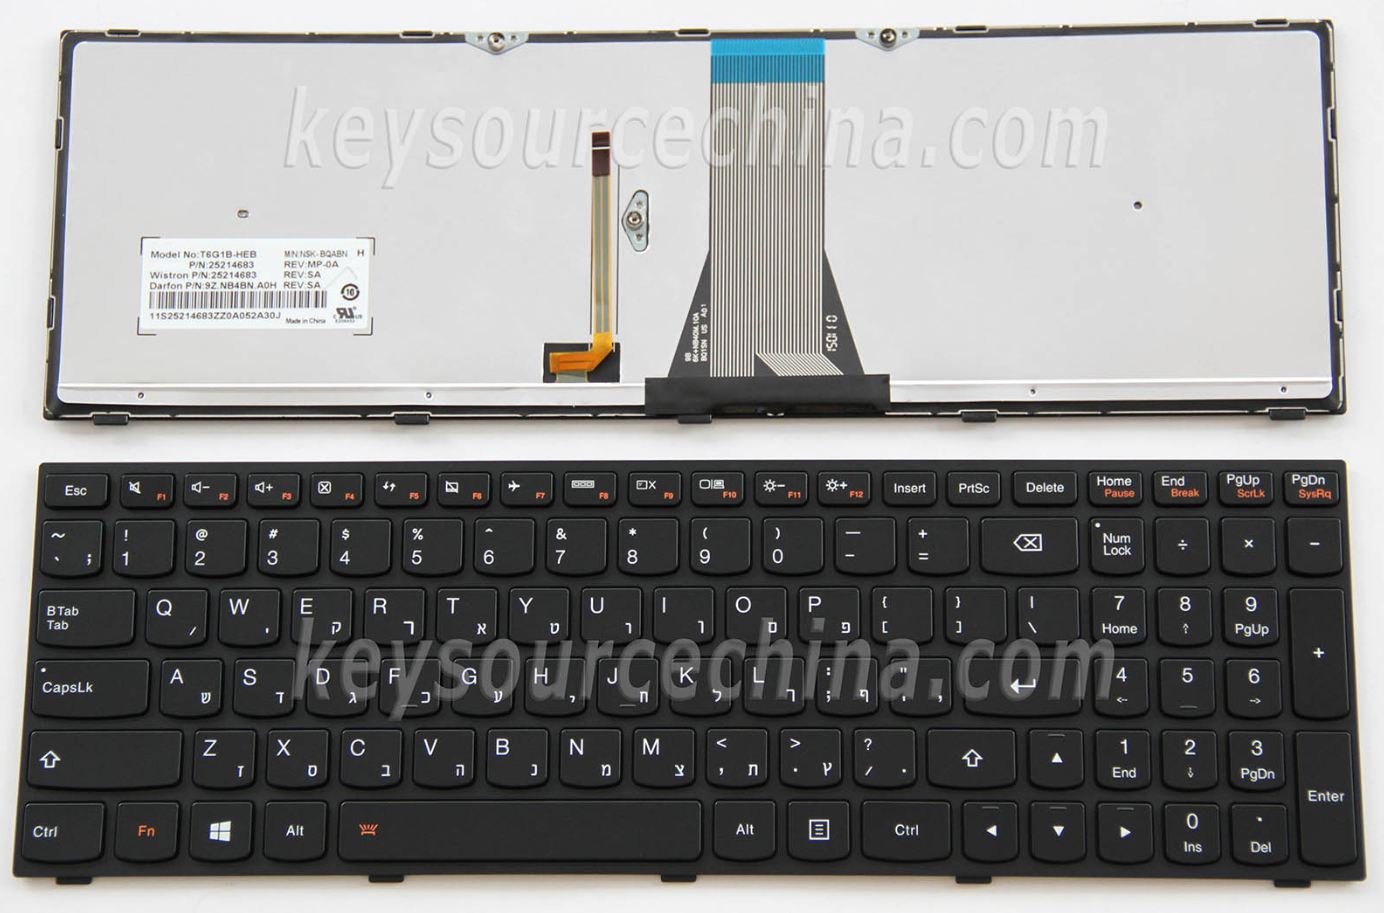 T6G1B-HEB Hebrew Laptop Keyboard Israel HE,Lenovo IdeaPad G70-80 Hebrew Laptop Keyboard Israel HE Backlit